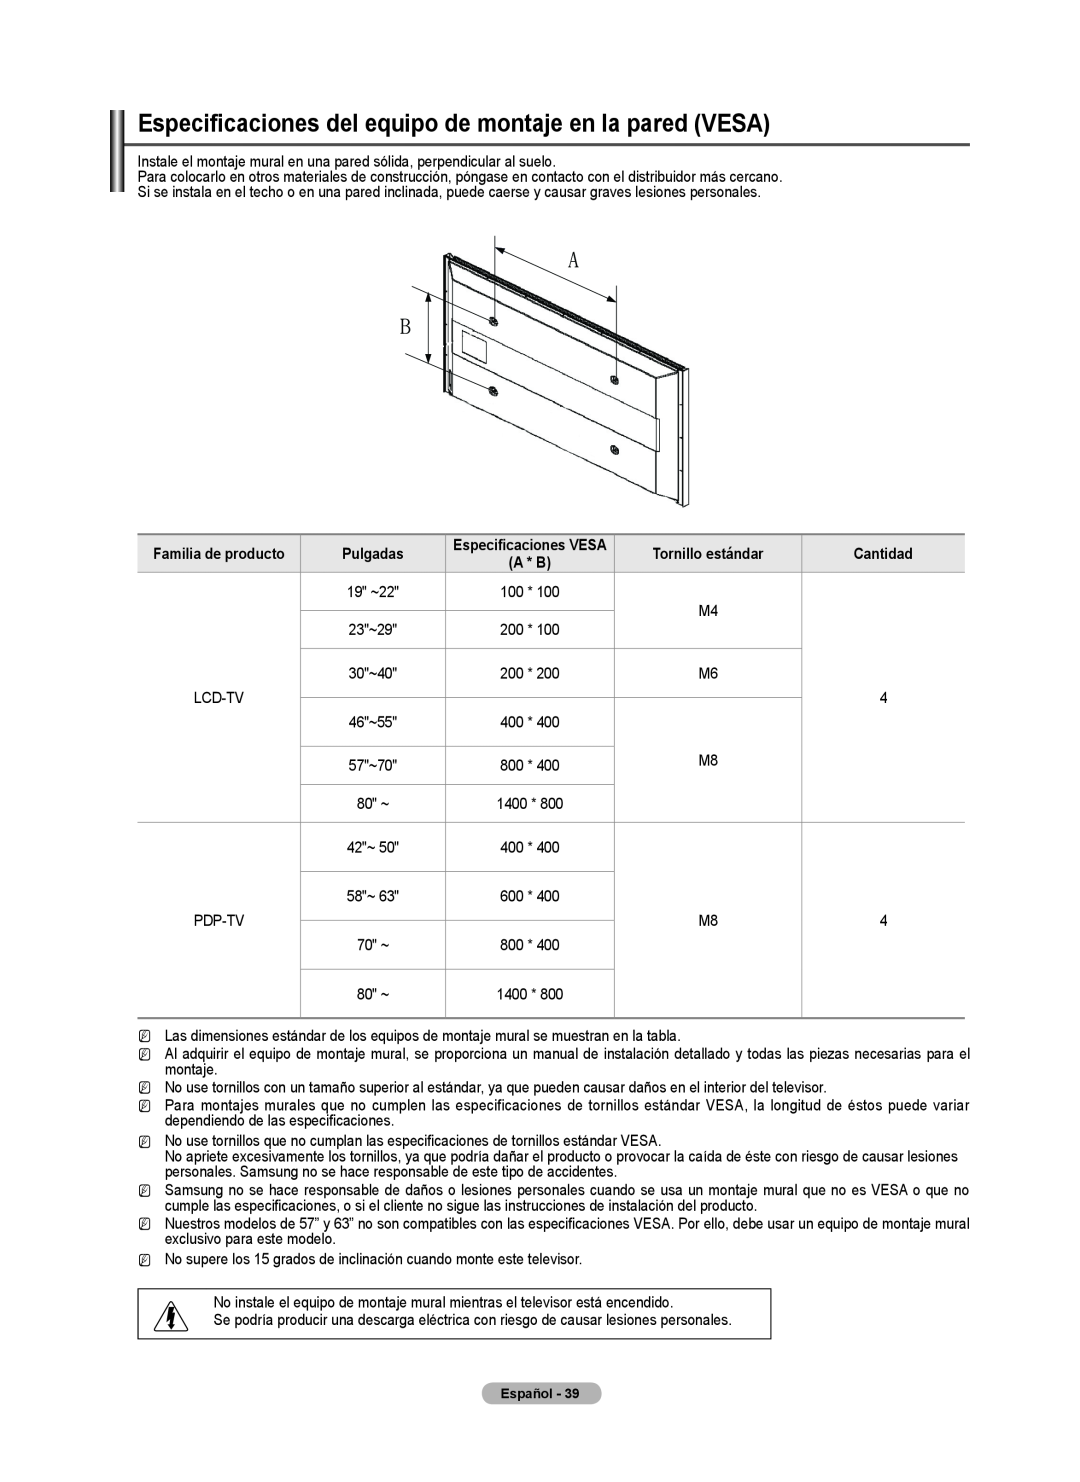 Samsung BN68-02426A-00 user manual Especificaciones del equipo de montaje en la pared VESA, Pulgadas 